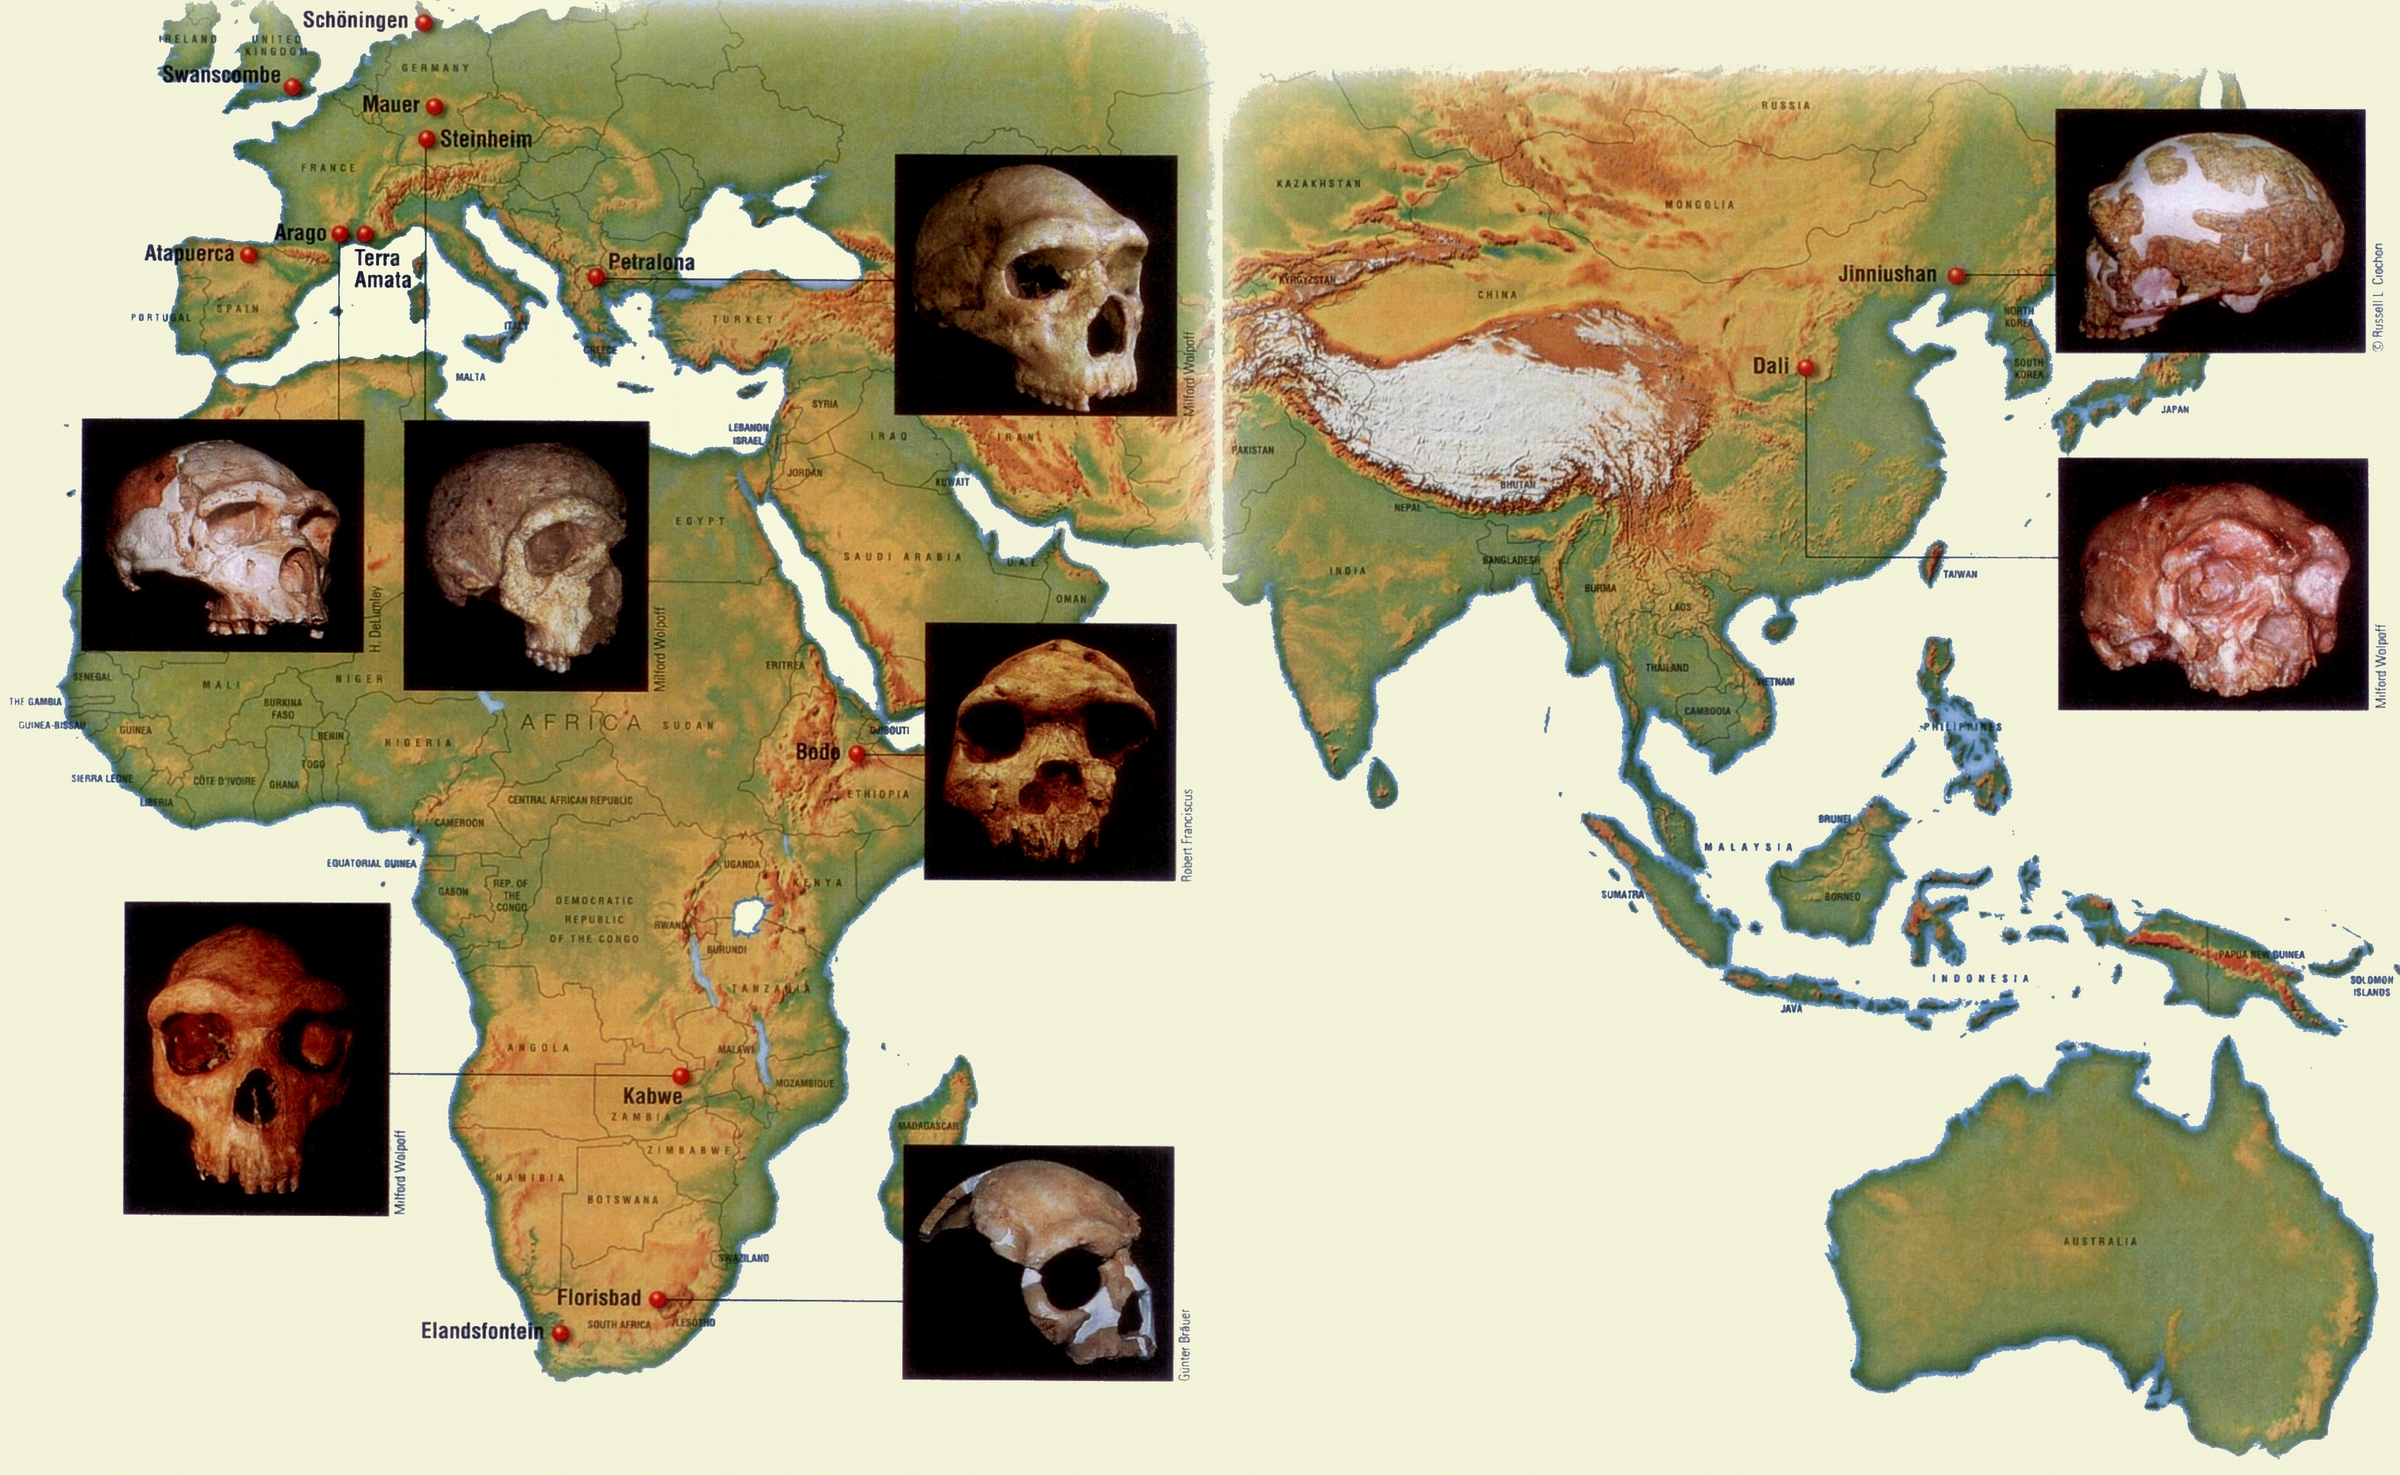 Μέση Πλειστόκαινος (780,000 125,000 χπ): Αρχαϊκοί άνθρωποι ως επί το πλείστον αντικατέστησαν τους προγενέστερους ανθρωπογονικούς στις